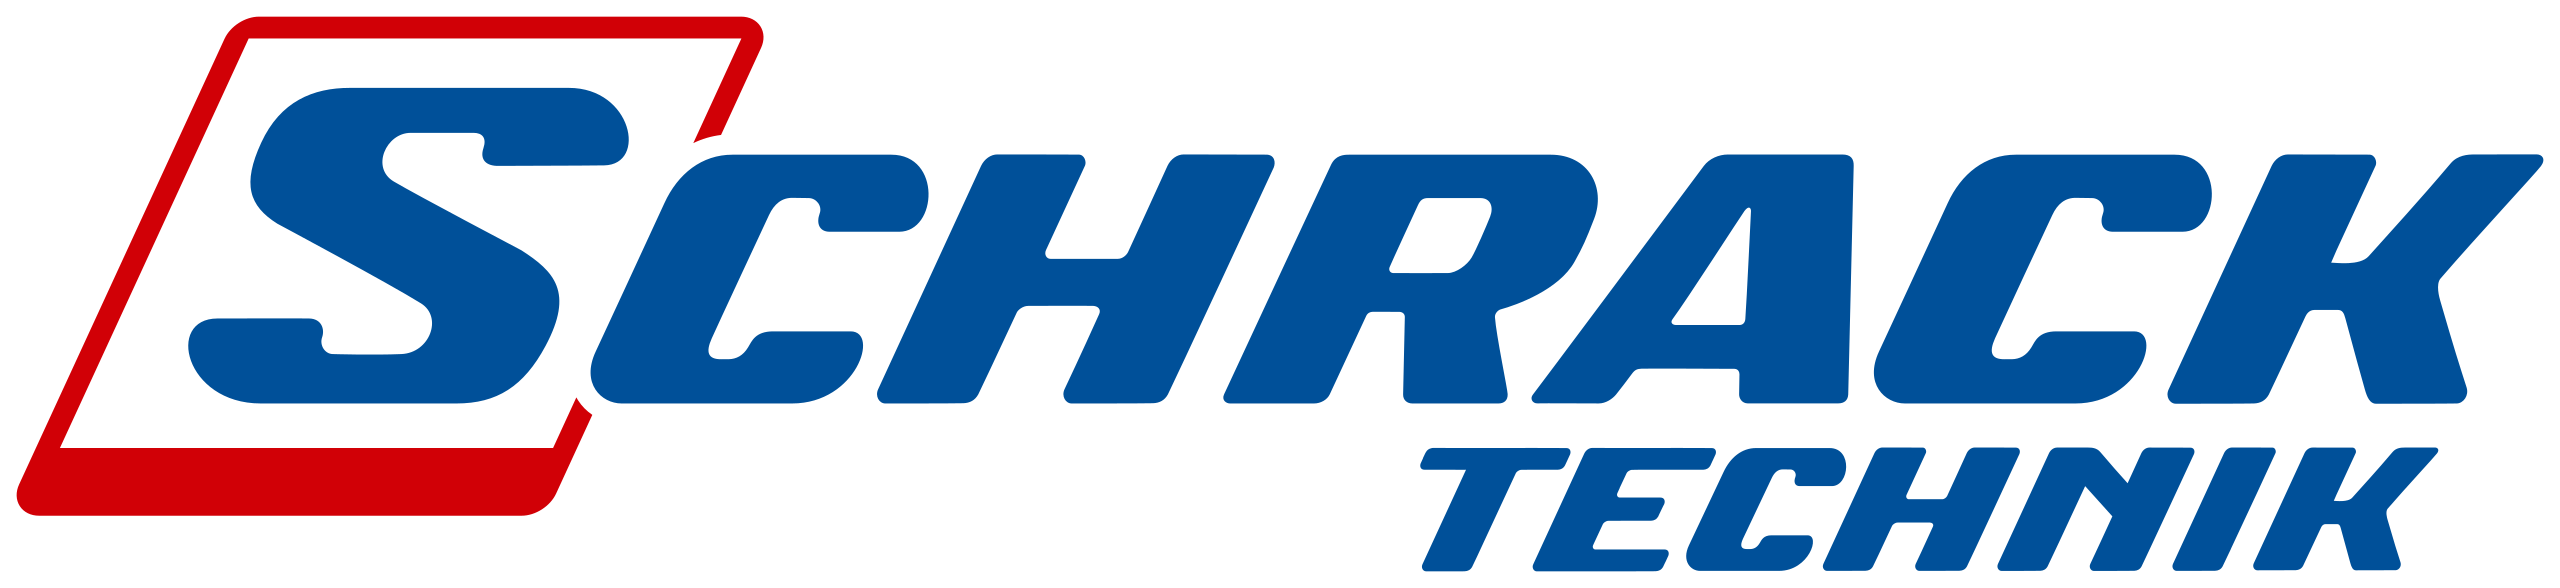 Schrack_Technik_logo